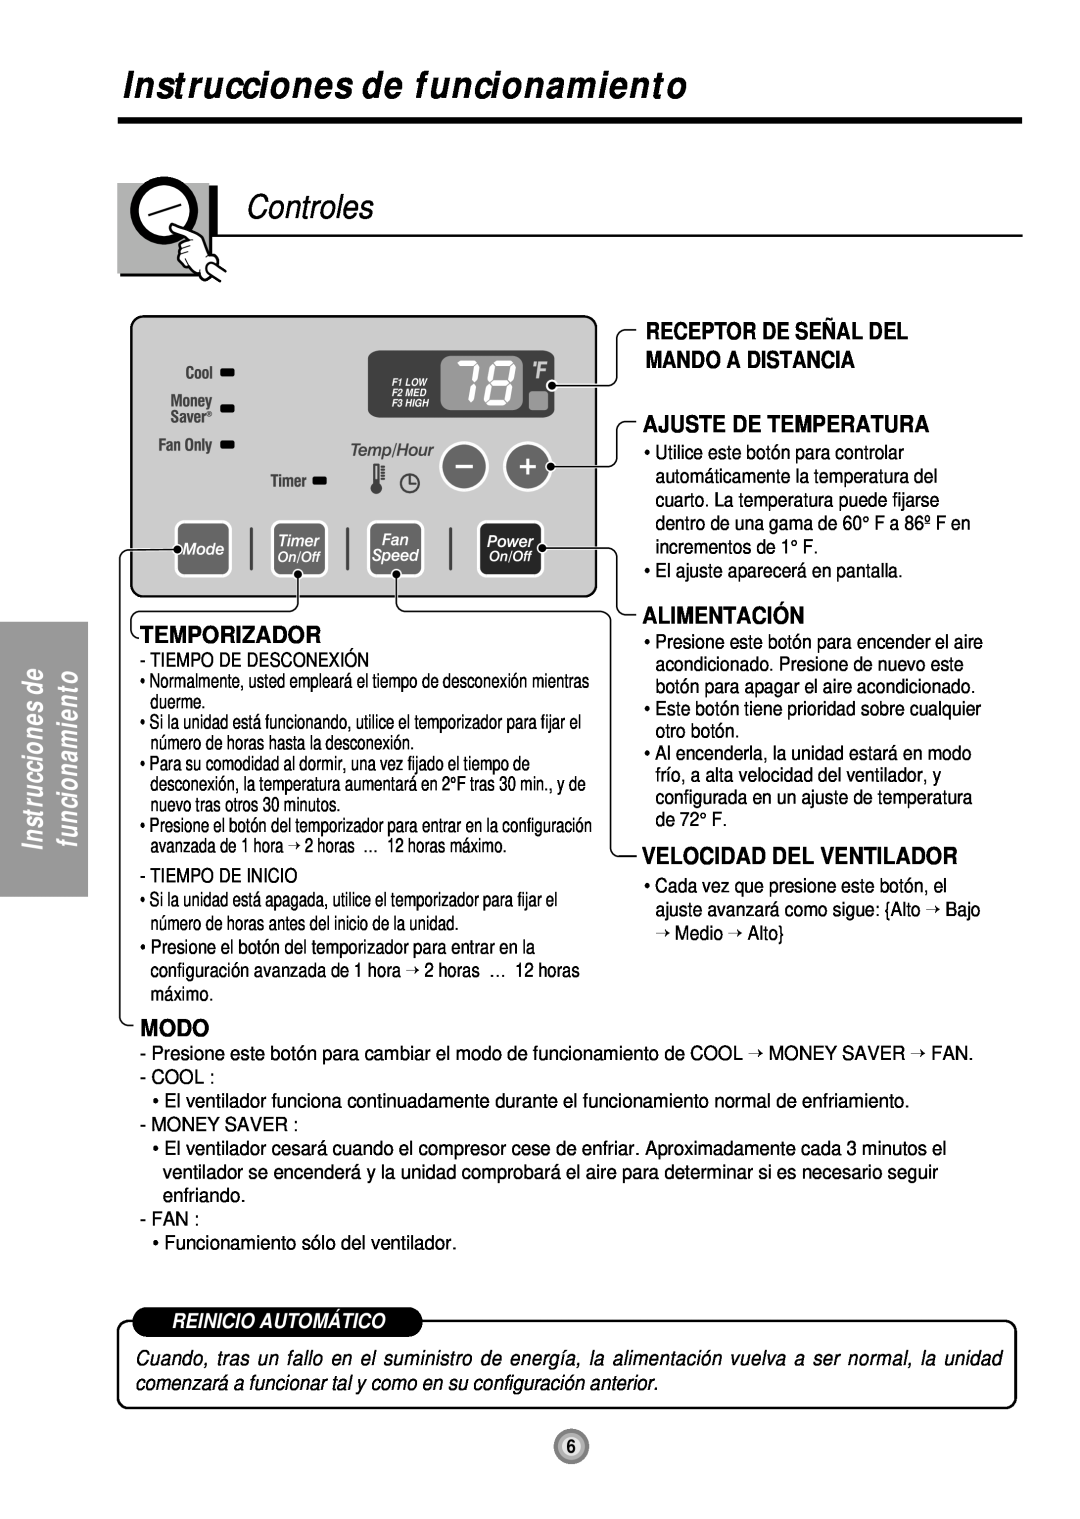 Friedrich US10 Instrucciones de funcionamiento, Controles, Receptor De Señ Al Del Mando A Distancia, Temporizador, Modo 